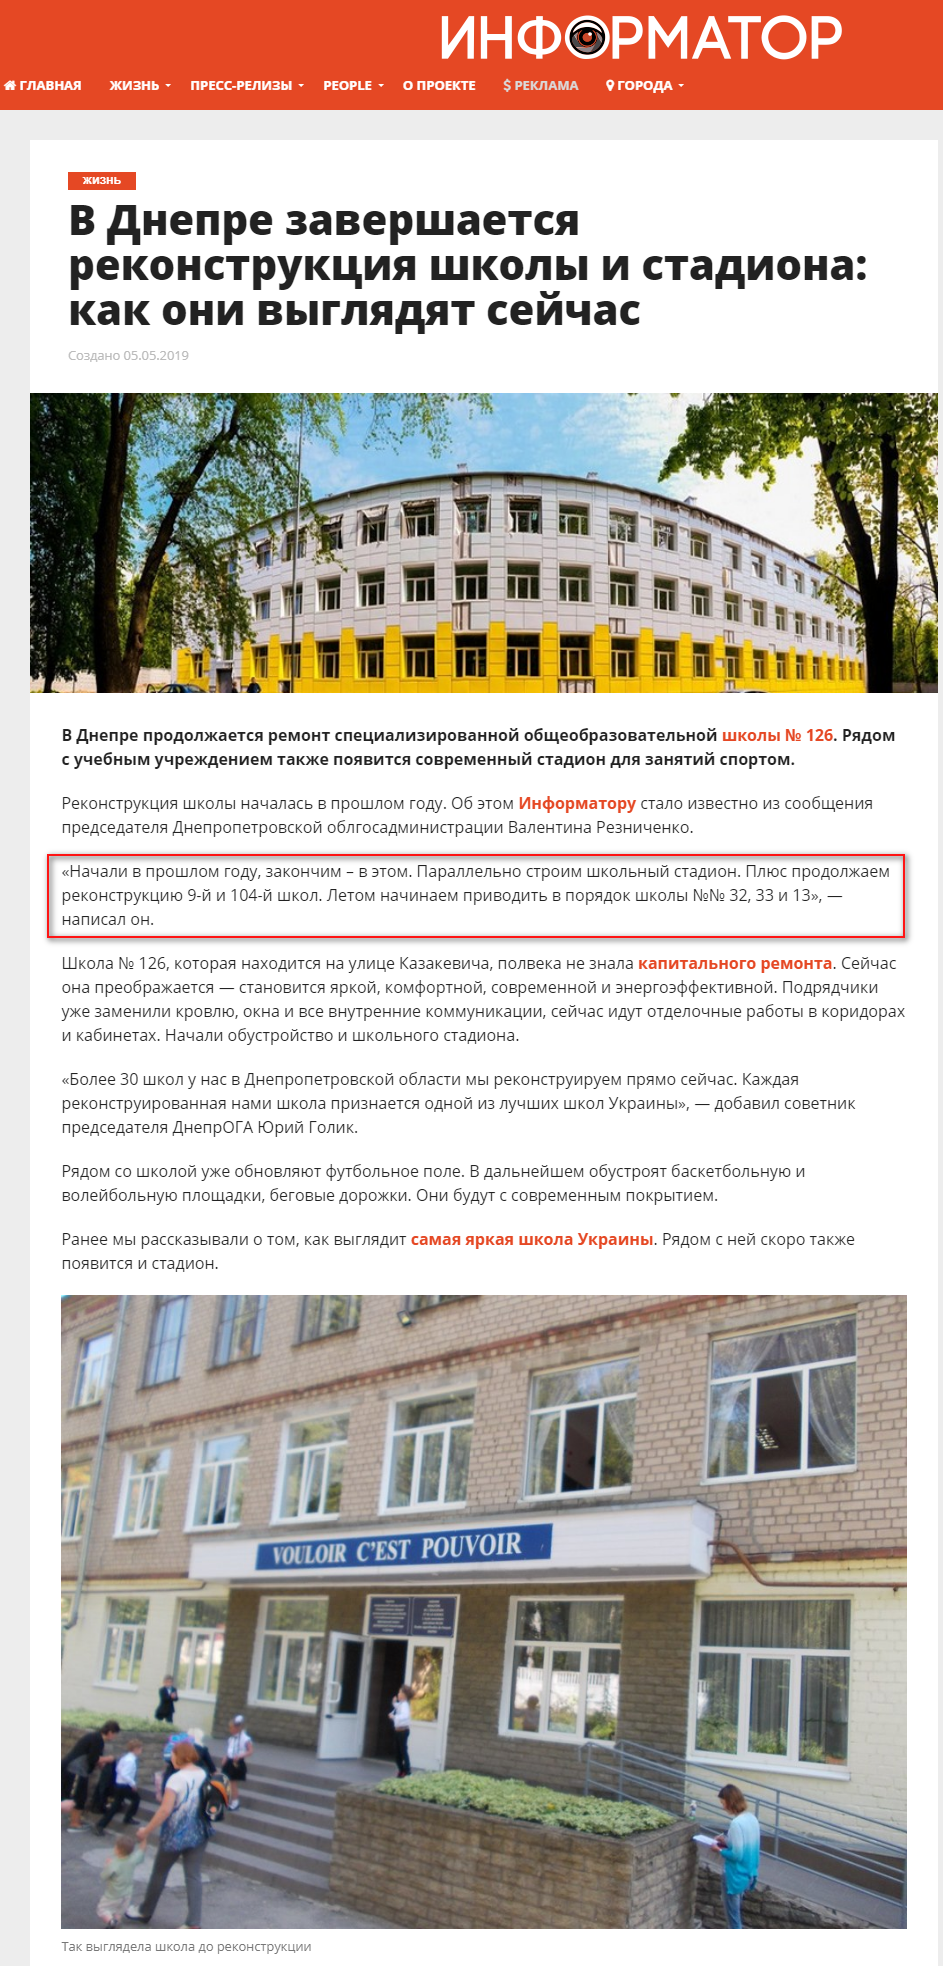 https://dp.informator.ua/2019/05/05/v-dnepre-zavershaetsya-rekonstruktsiya-shkoly-i-stadiona-kak-oni-vyglyadyat-sejchas/